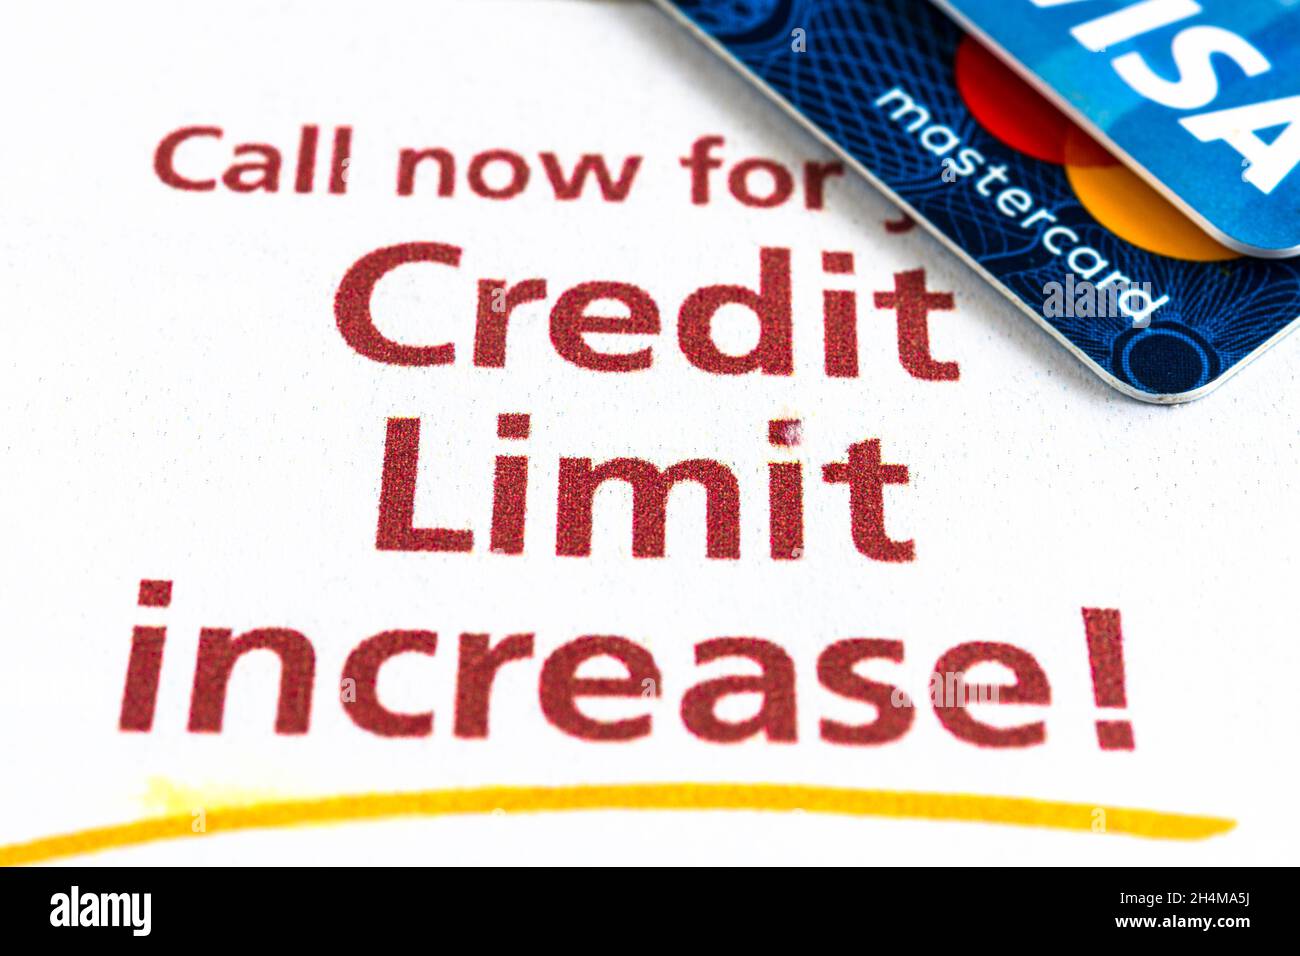 Cartes de crédit Visa et Mastercard sur un papier publicitaire invitant à augmenter votre limite de crédit vu à Toronto Canada.2 novembre 2021 Banque D'Images